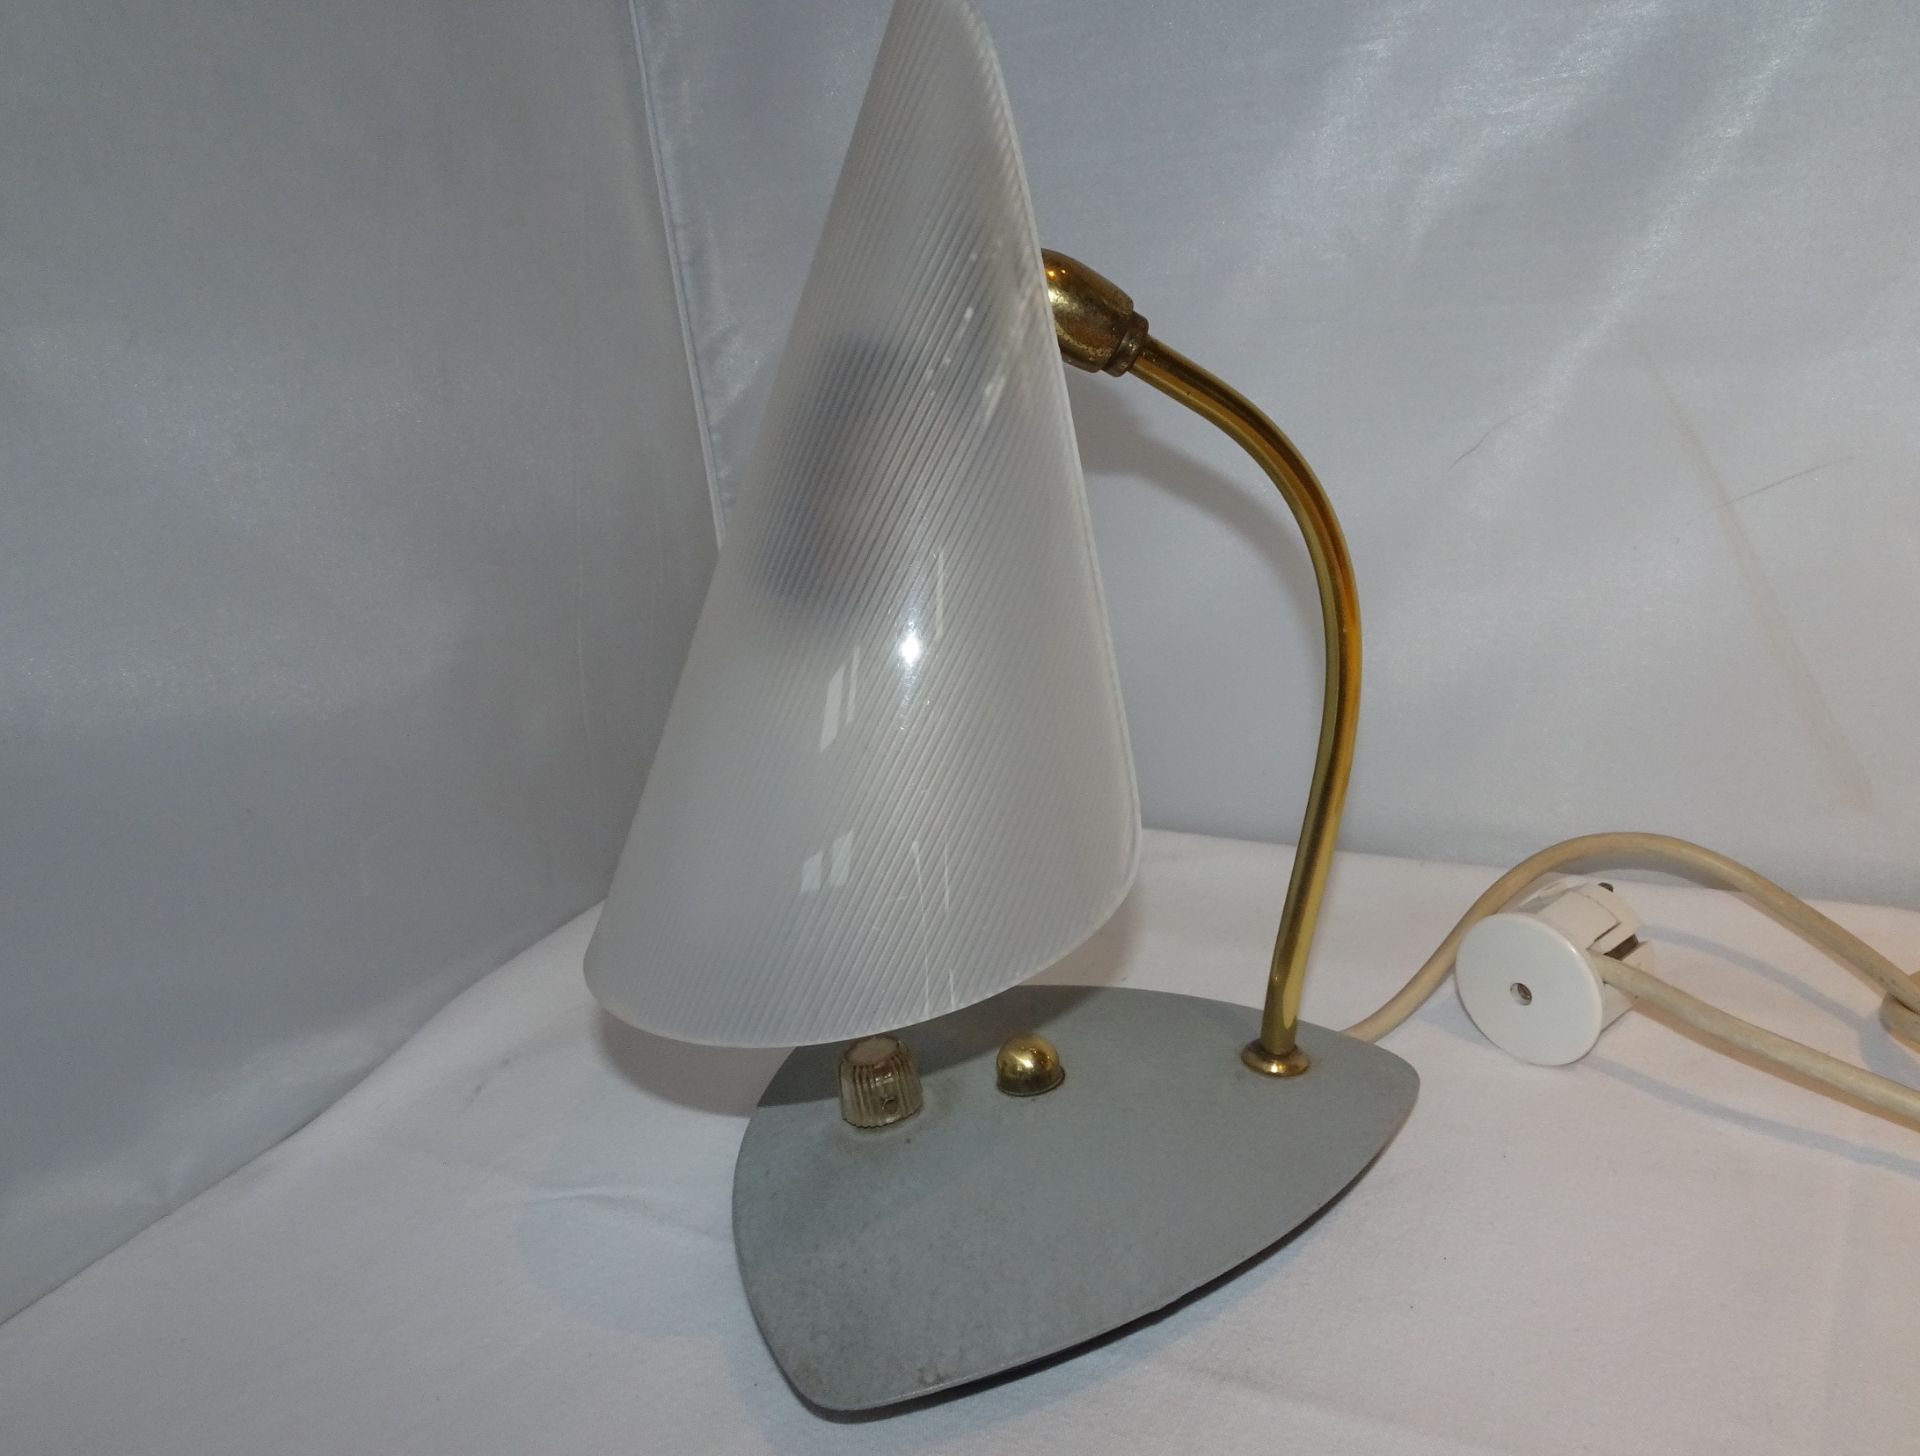 1 Tüten-Nachttischlampe mit Plastikschirm und Dimmer. Voll funktionstüchtig. Selten!